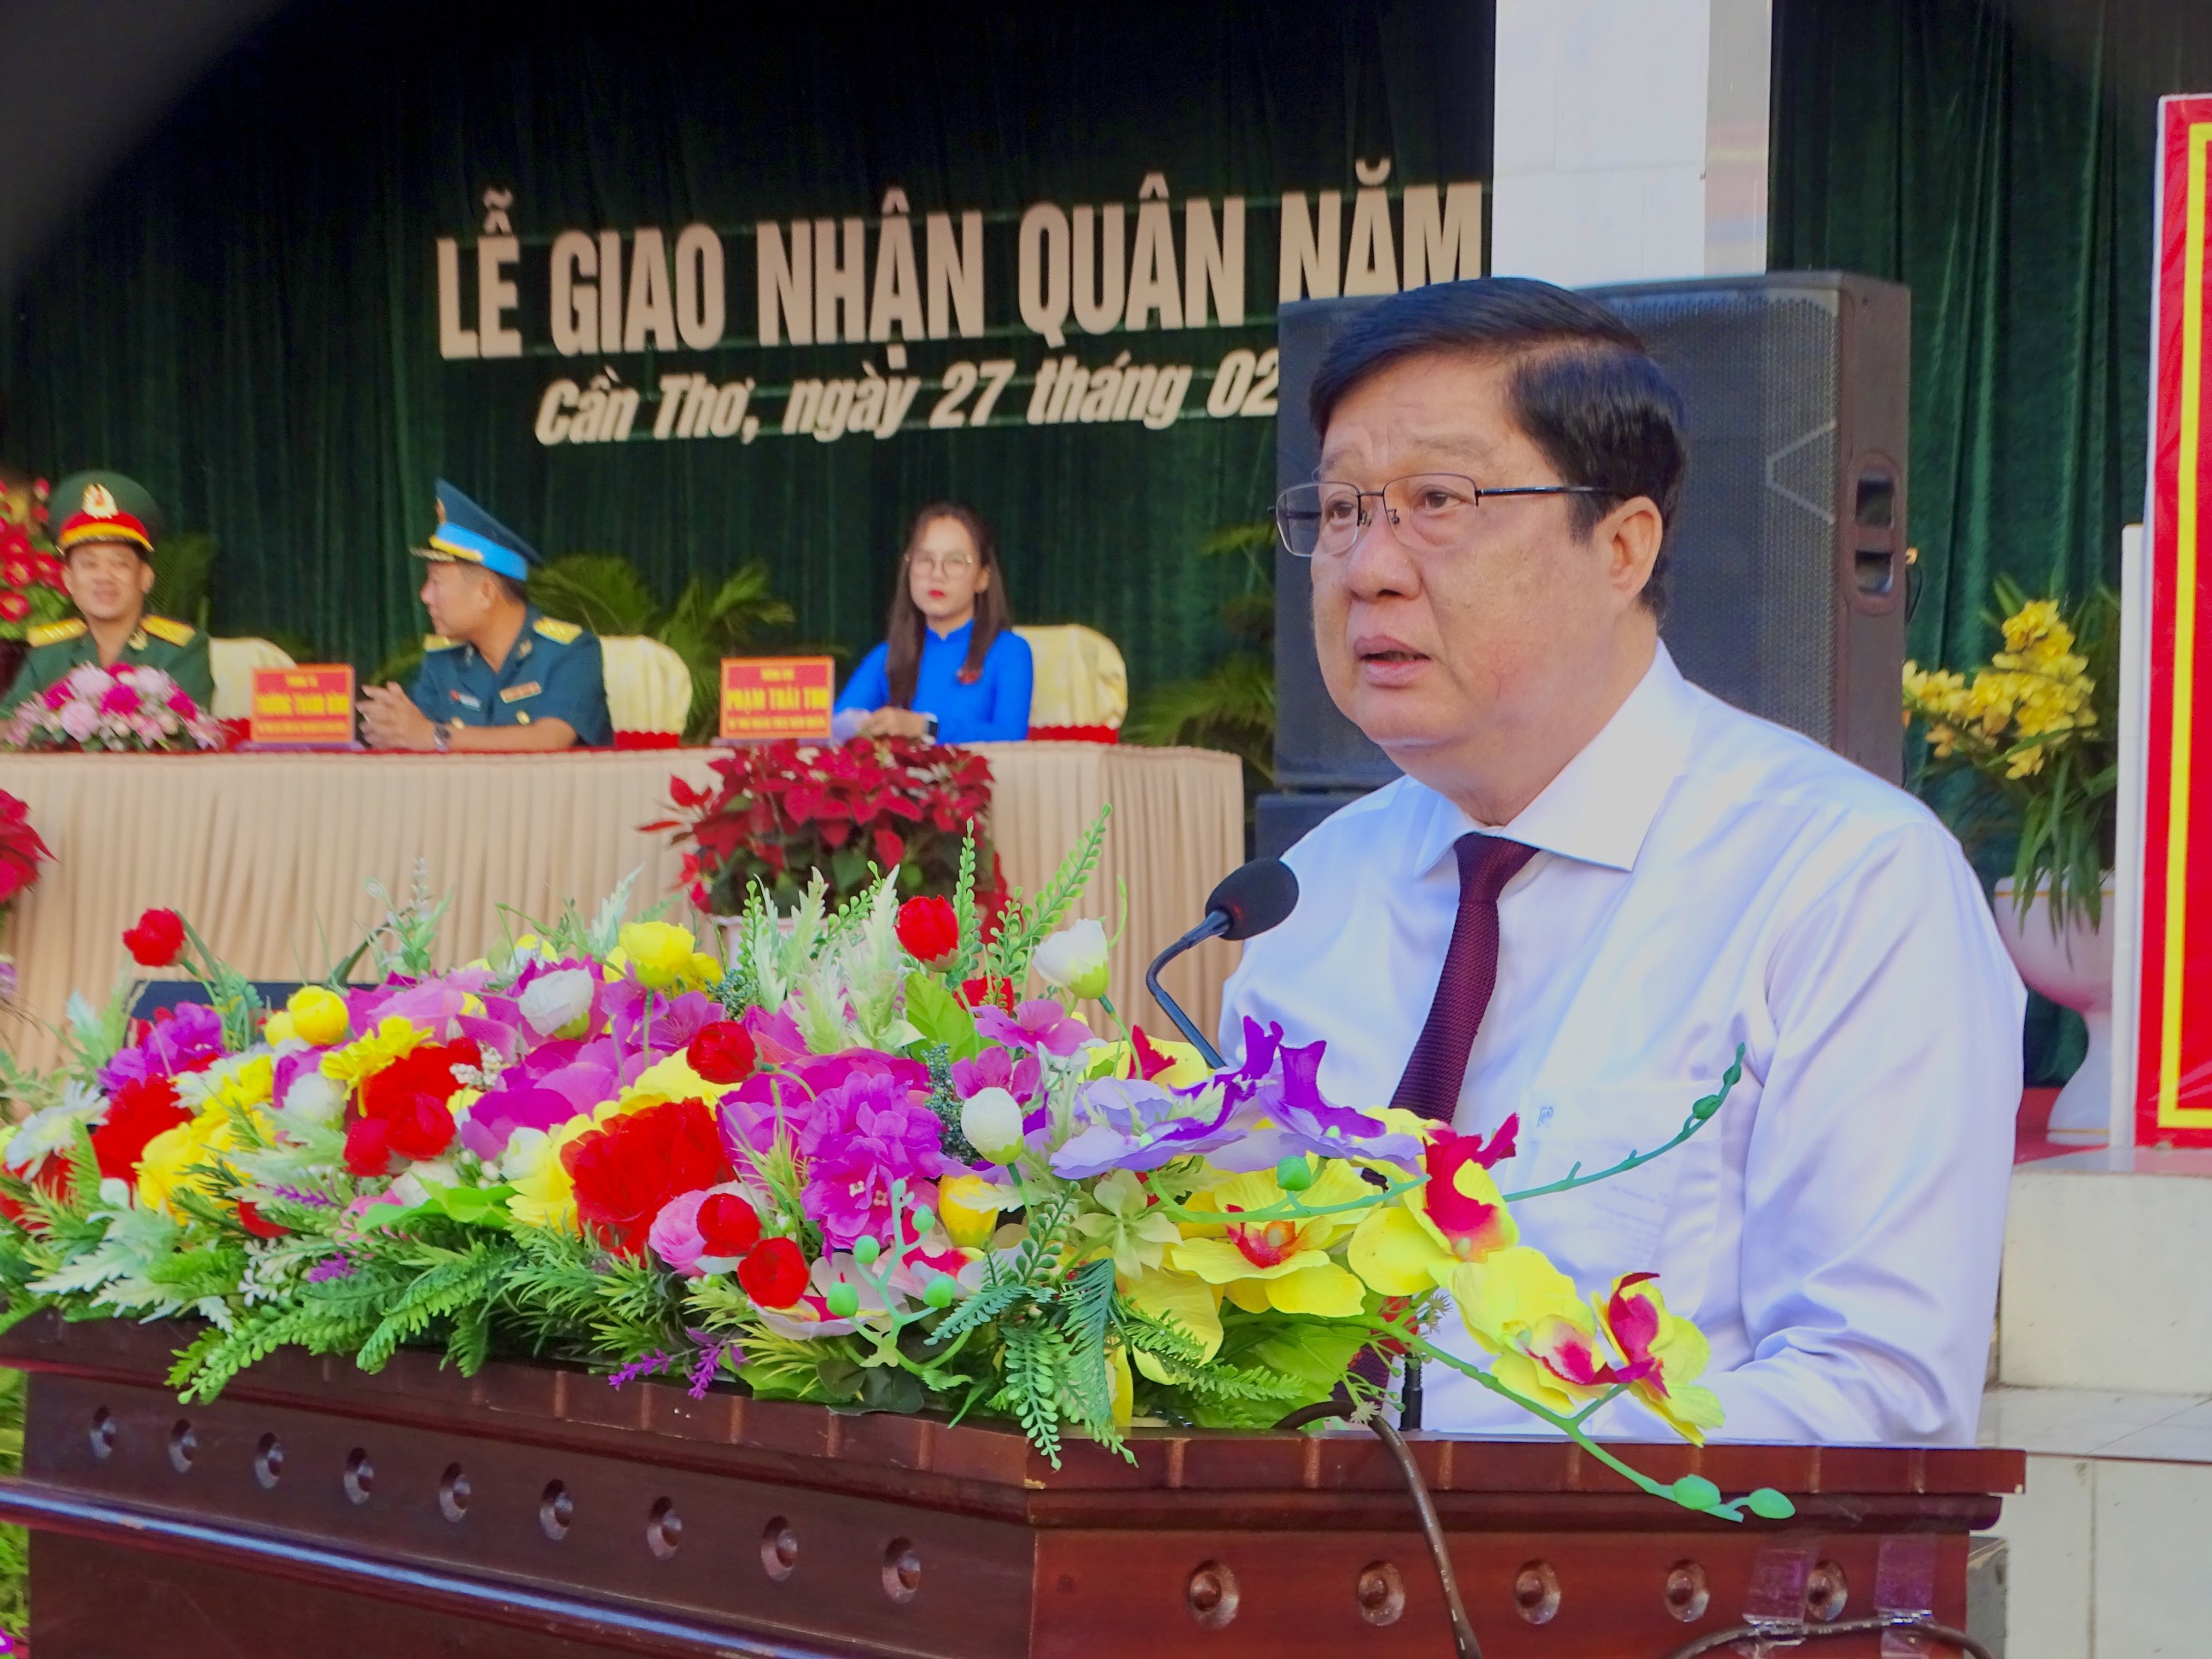 NQ3: Đồng chí Phạm Văn Hiểu, Phó Bí thư Thường trực Thành ủy, Chủ tịch Hội đồng nhân dân thành phố Cần Thơ phát biểu tại buổi lễ